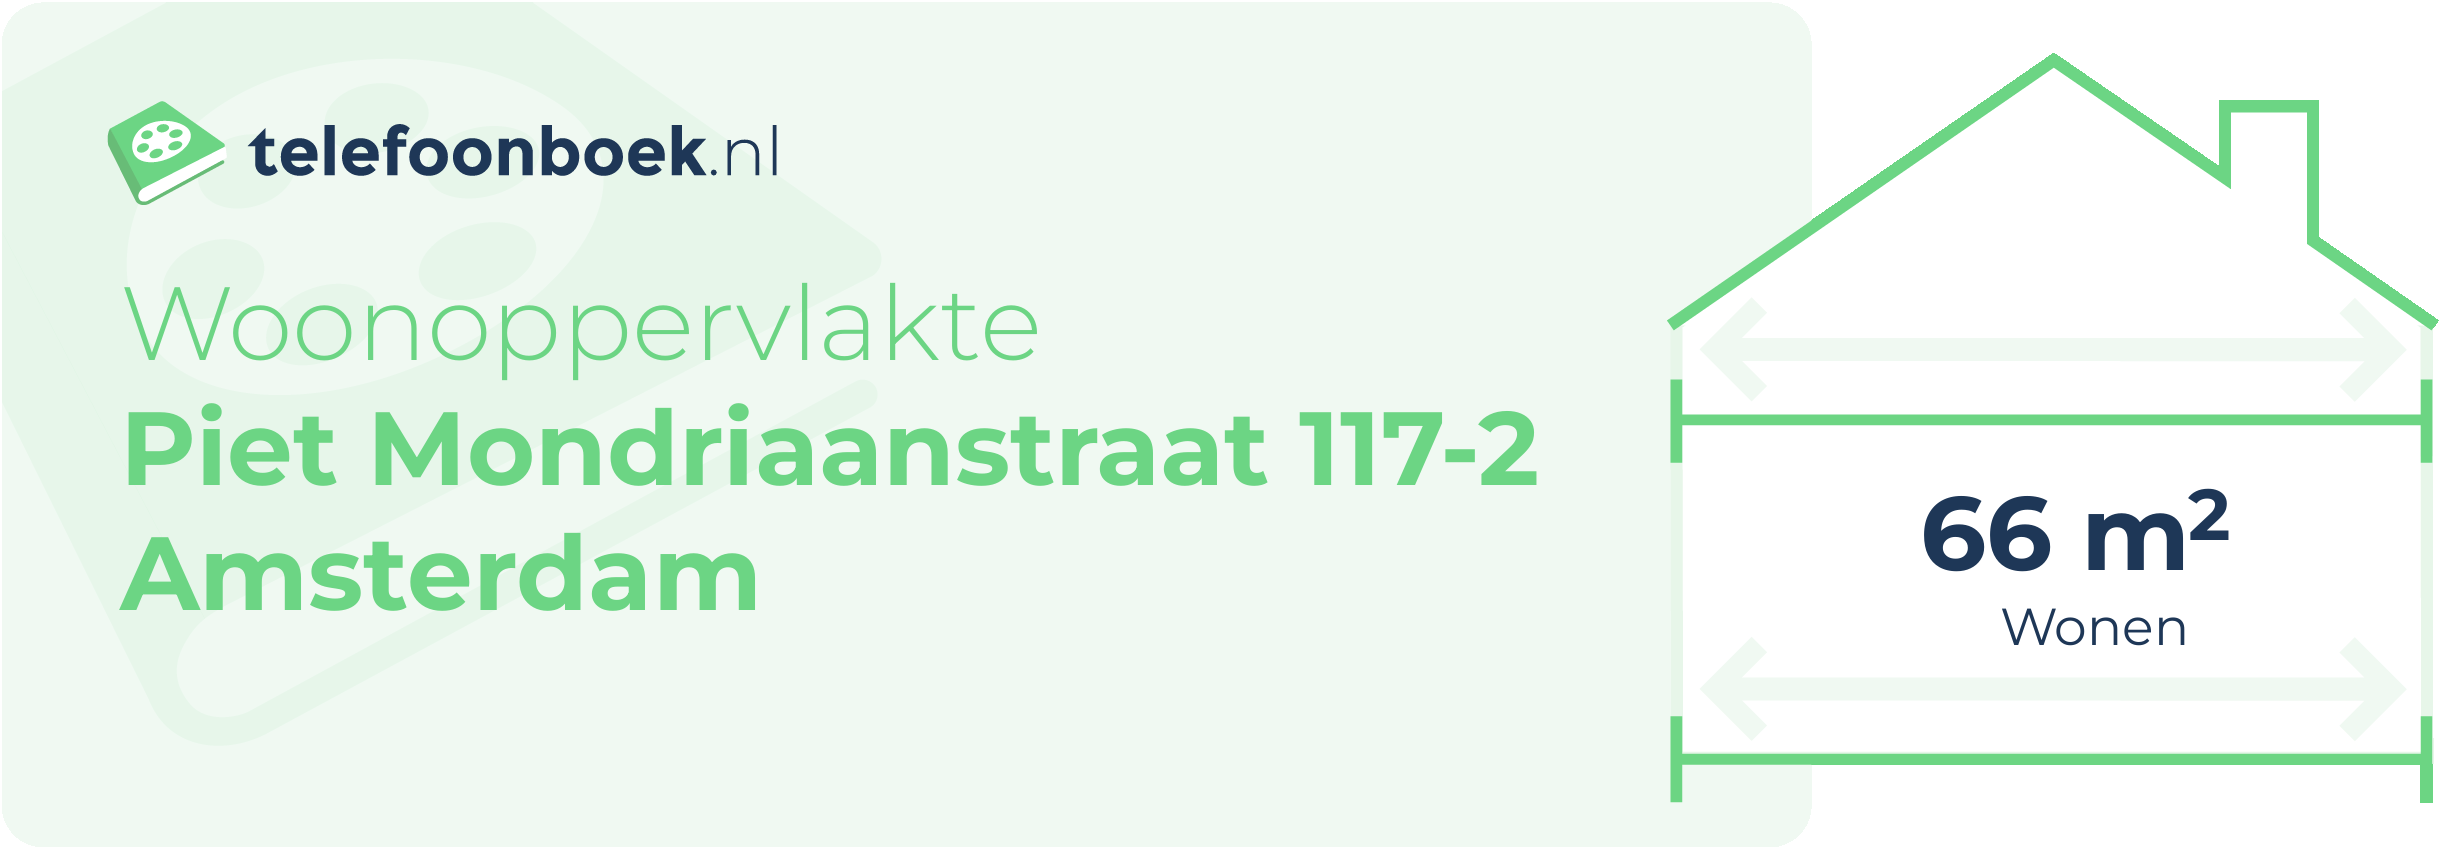 Woonoppervlakte Piet Mondriaanstraat 117-2 Amsterdam